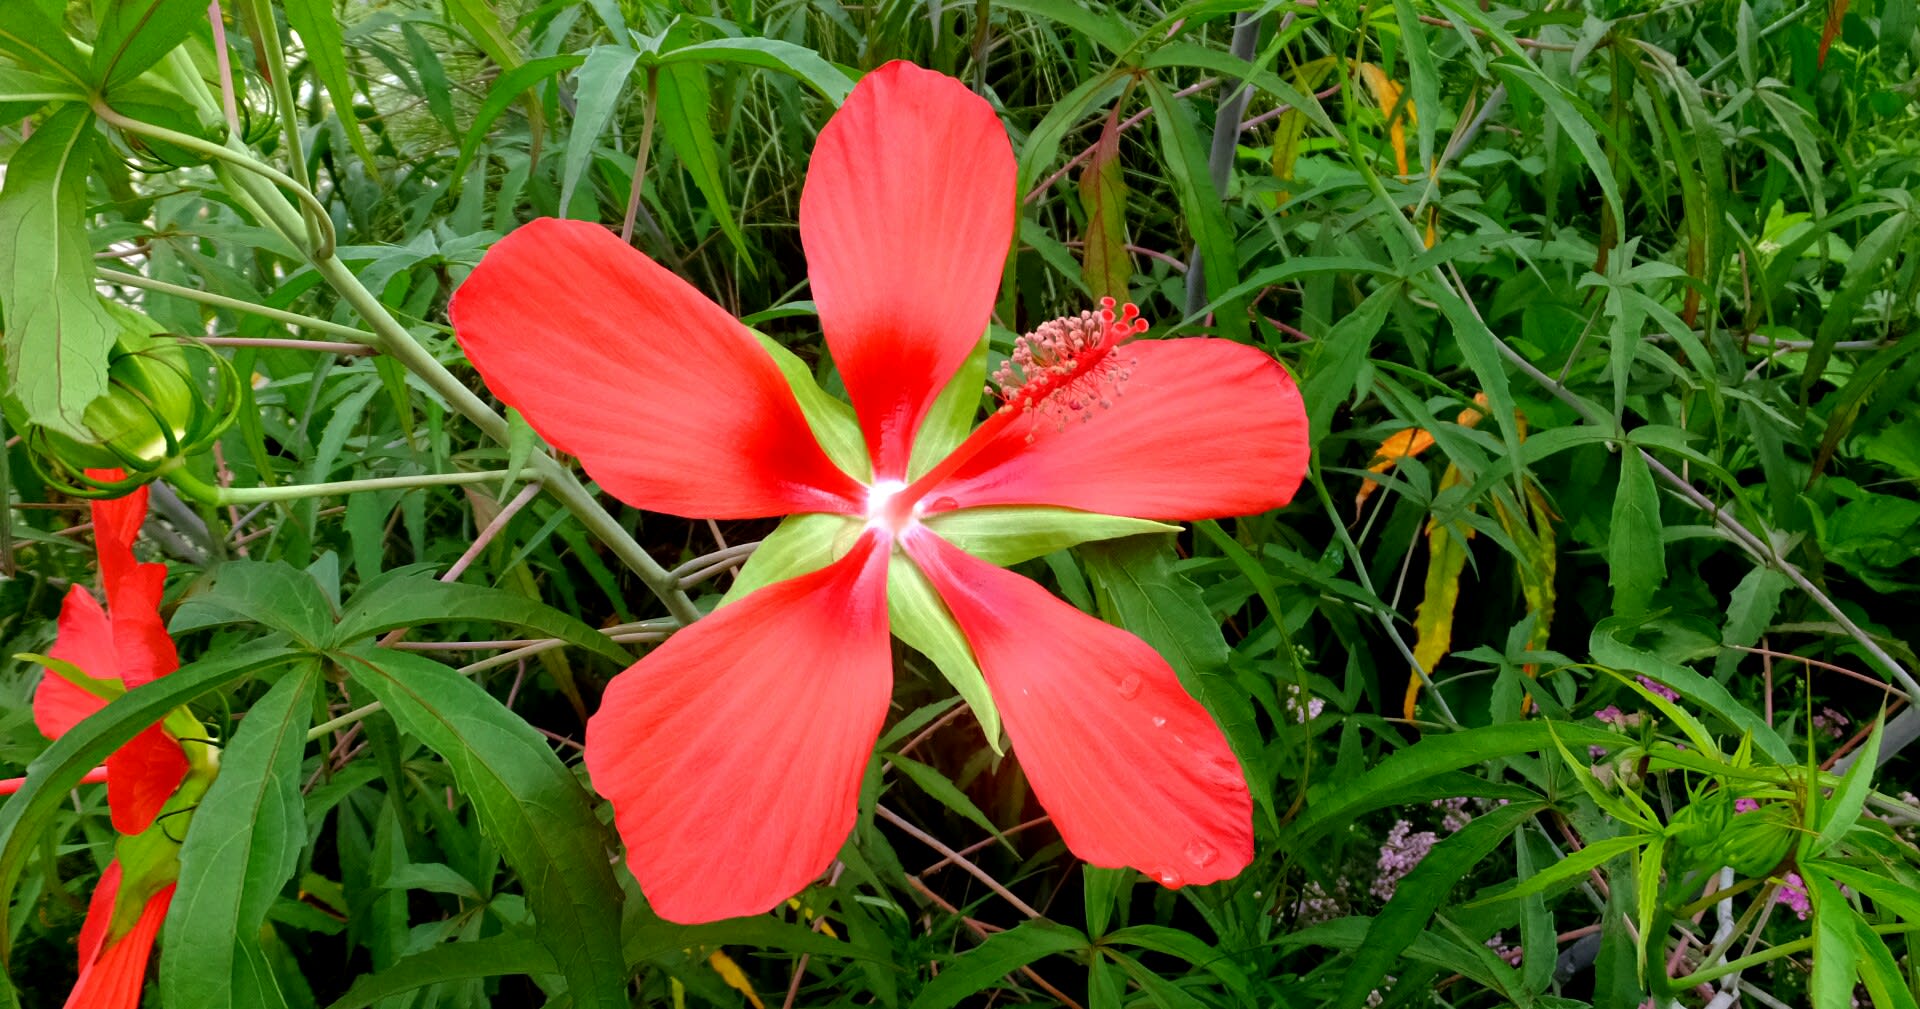 夏の花 モミジアオイアメリカフヨウヒマワリ熱帯睡蓮 京都で定年